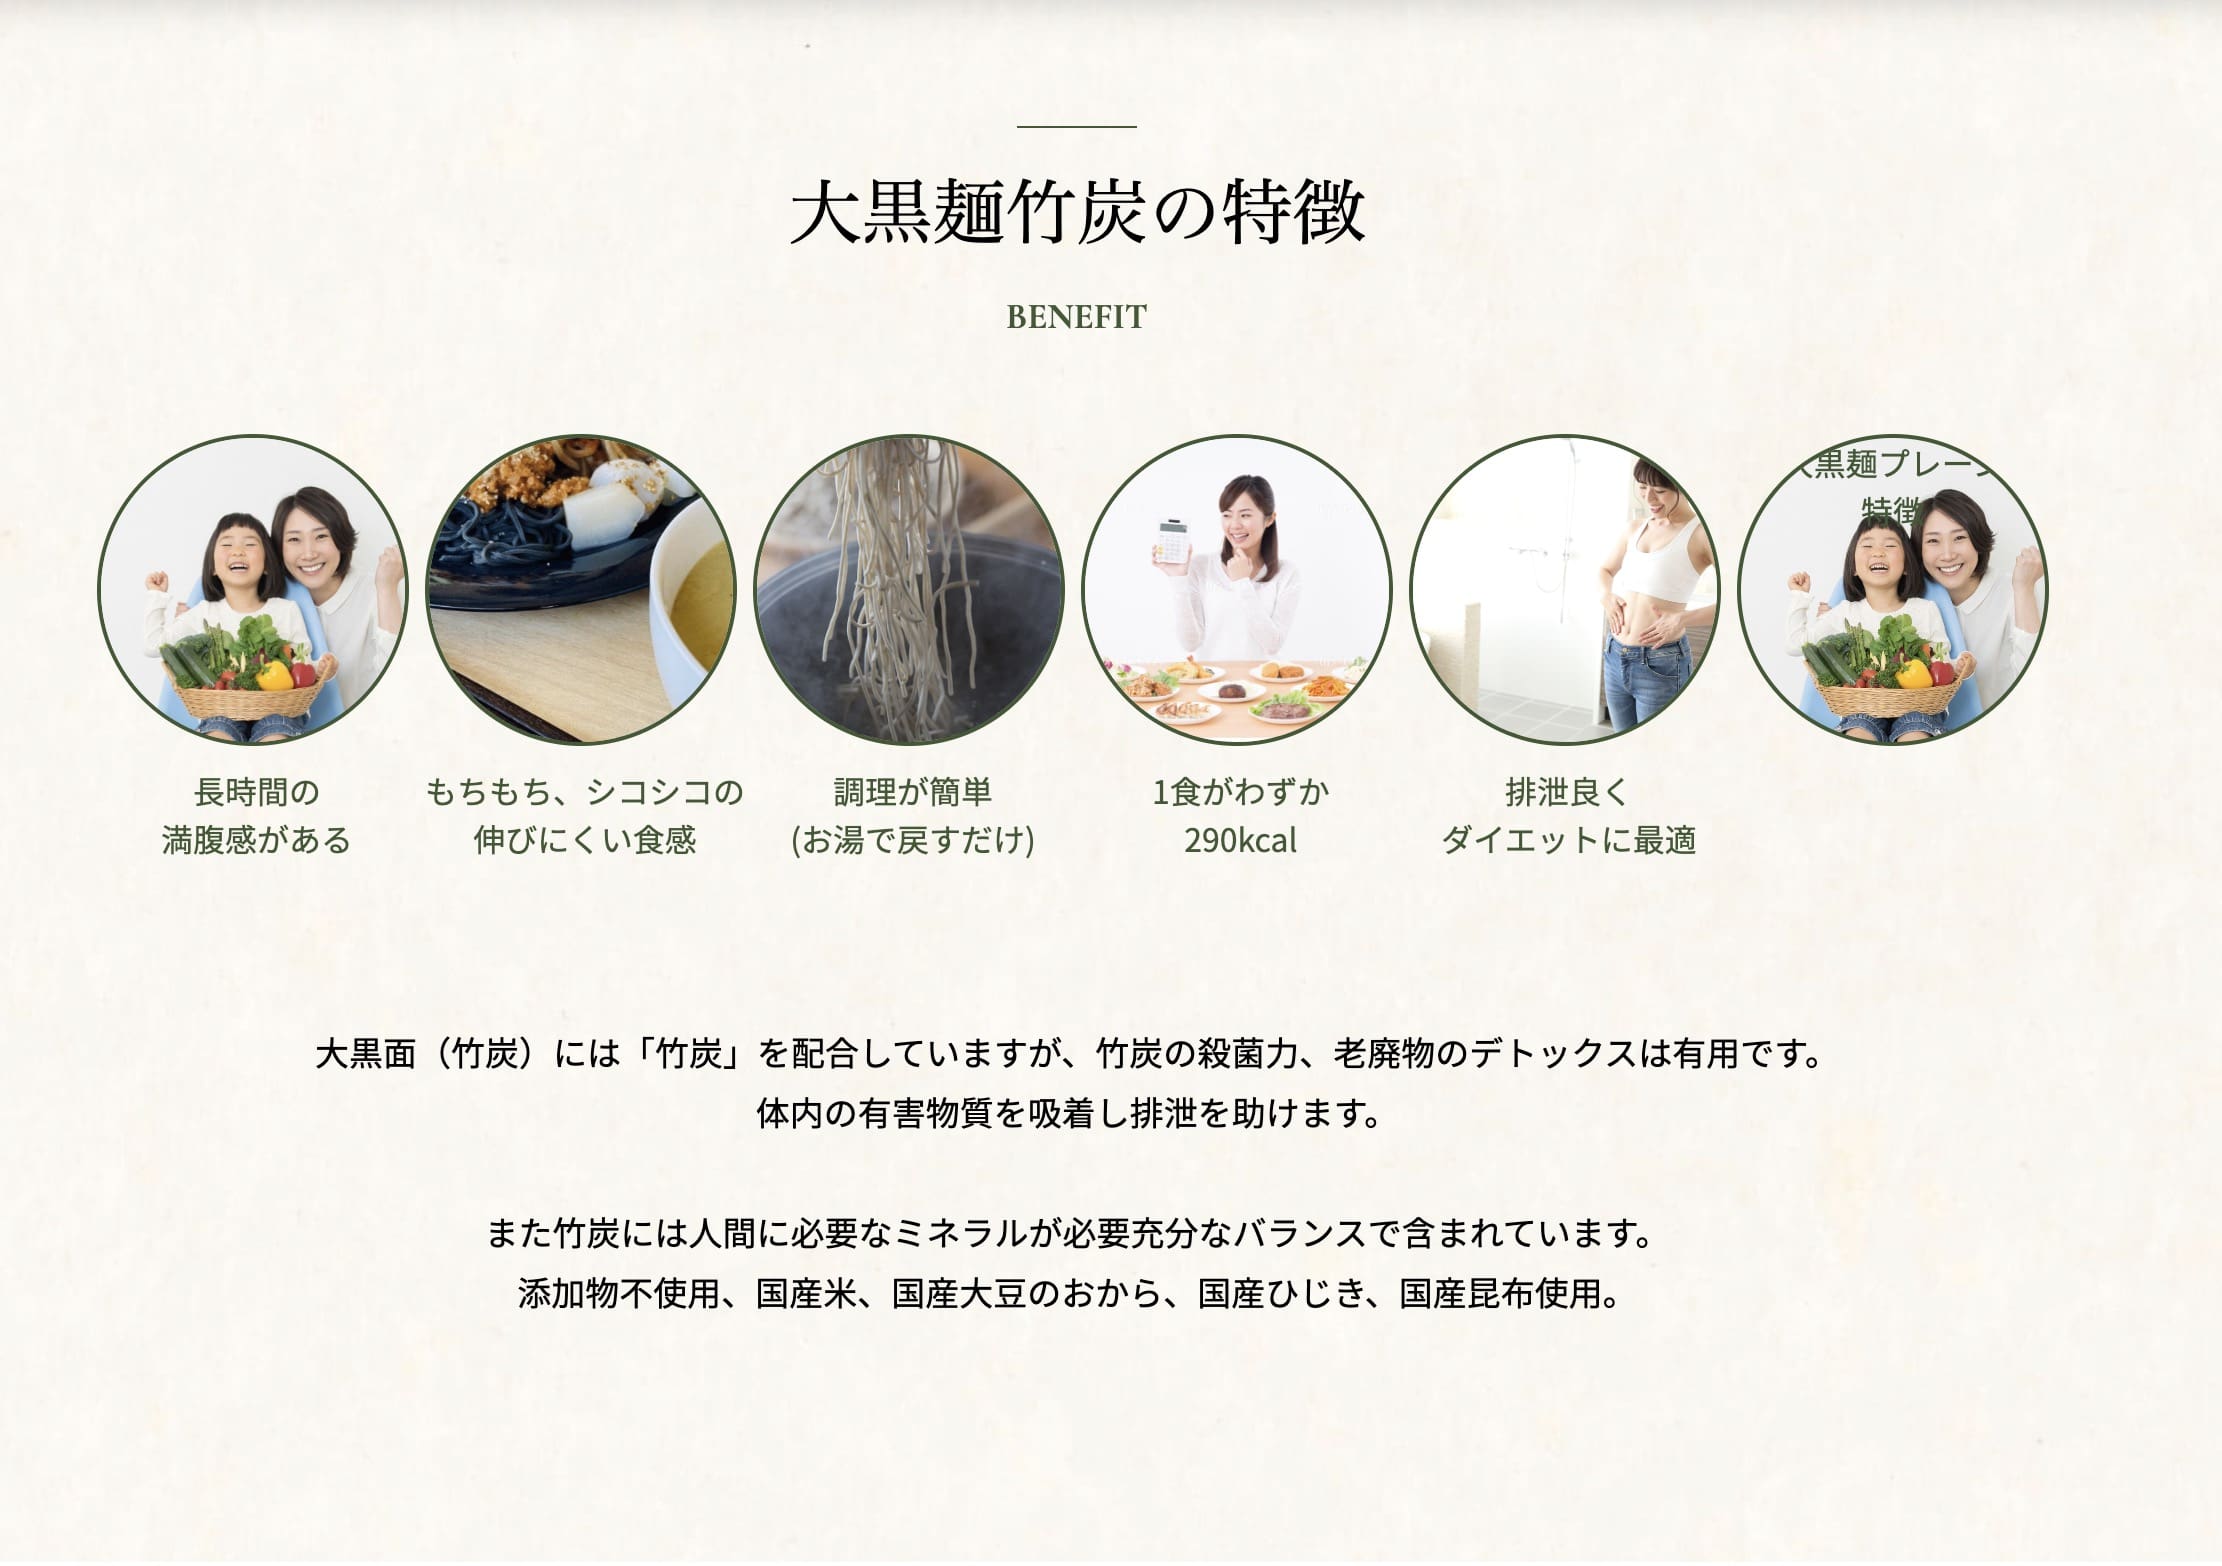 くみこ玄米大黒麺（おから、玄米、ひじき＆昆布、竹炭）5個（お試しパック）の竹炭を使った商品を紹介する日本のウェブサイトのホームページです。